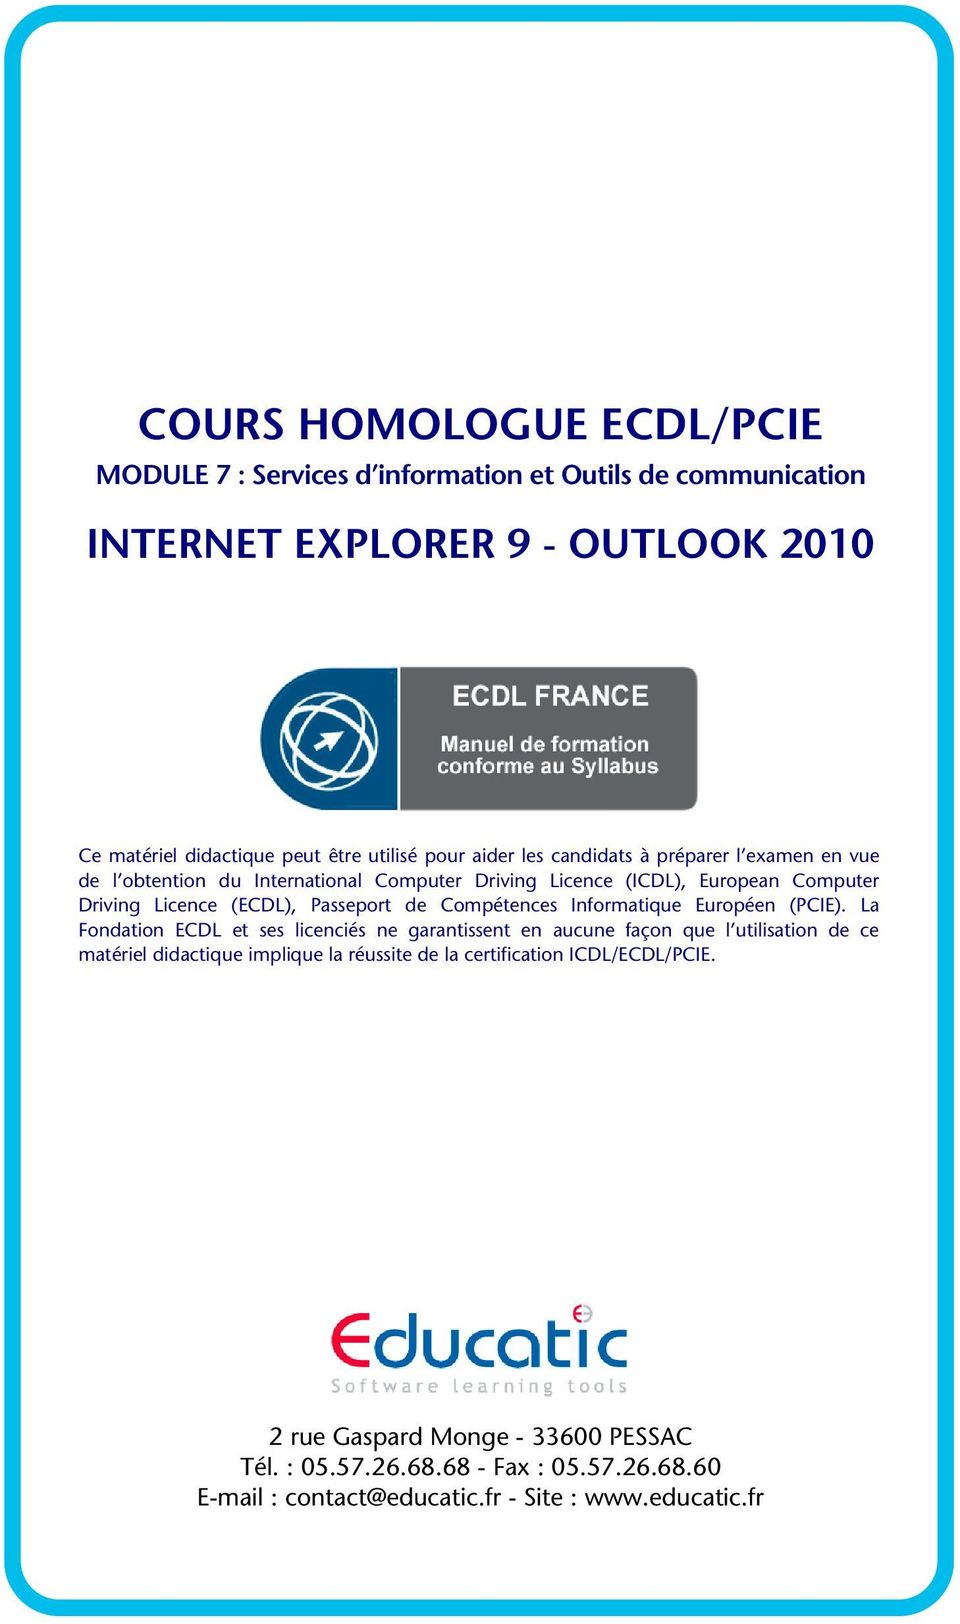 Compétences Informatique Européen (PCIE).